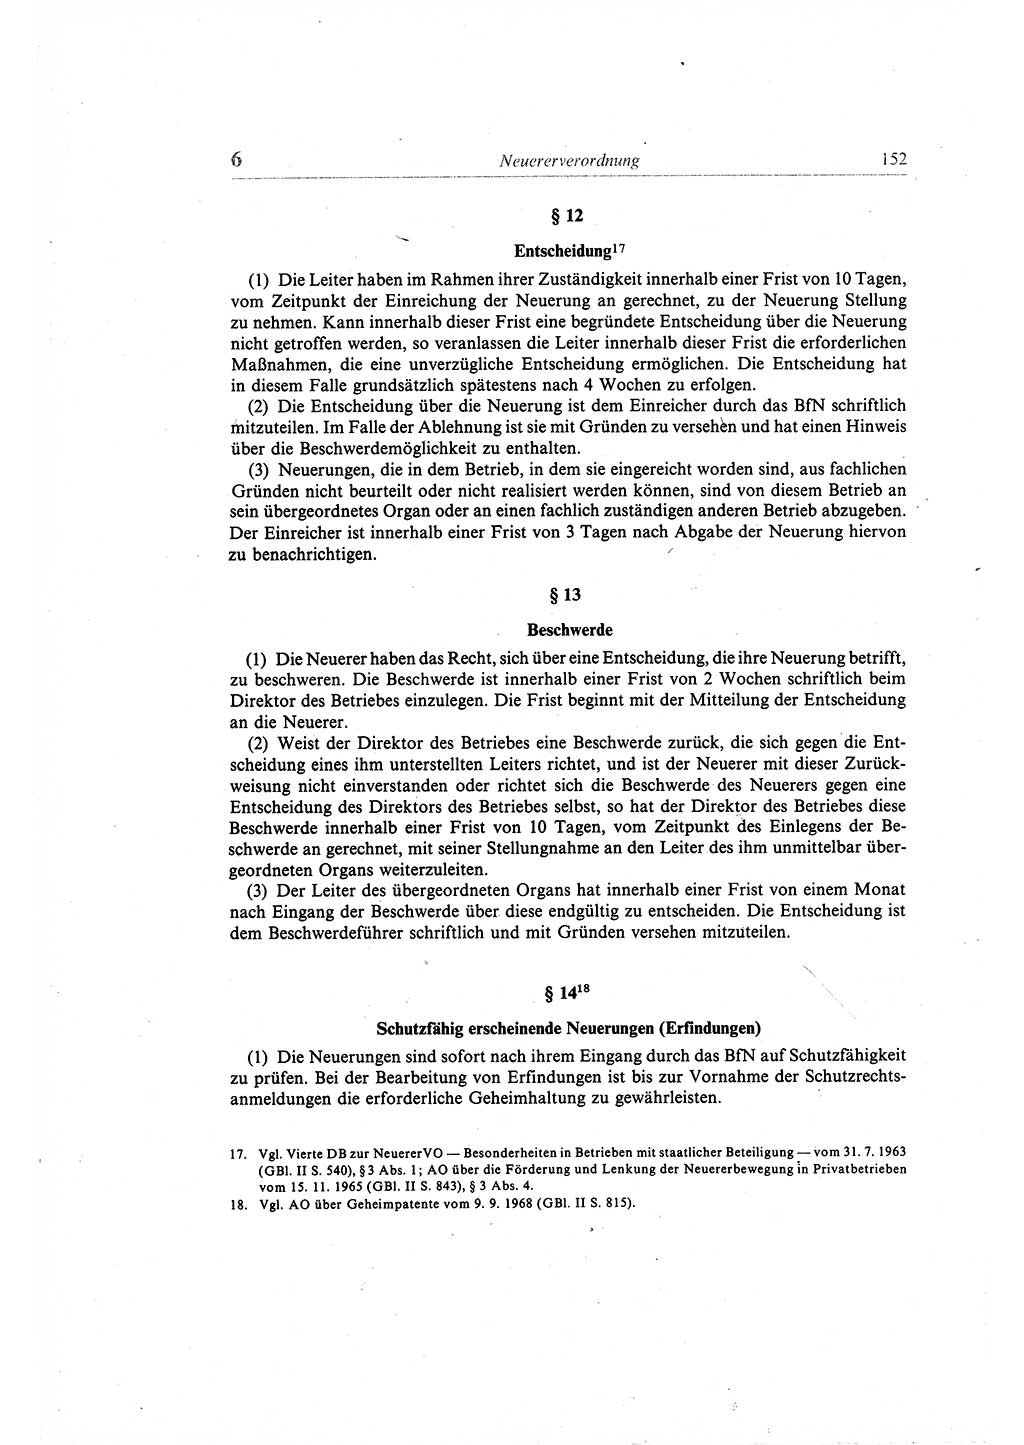 Gesetzbuch der Arbeit (GBA) und andere ausgewählte rechtliche Bestimmungen [Deutsche Demokratische Republik (DDR)] 1968, Seite 152 (GBA DDR 1968, S. 152)